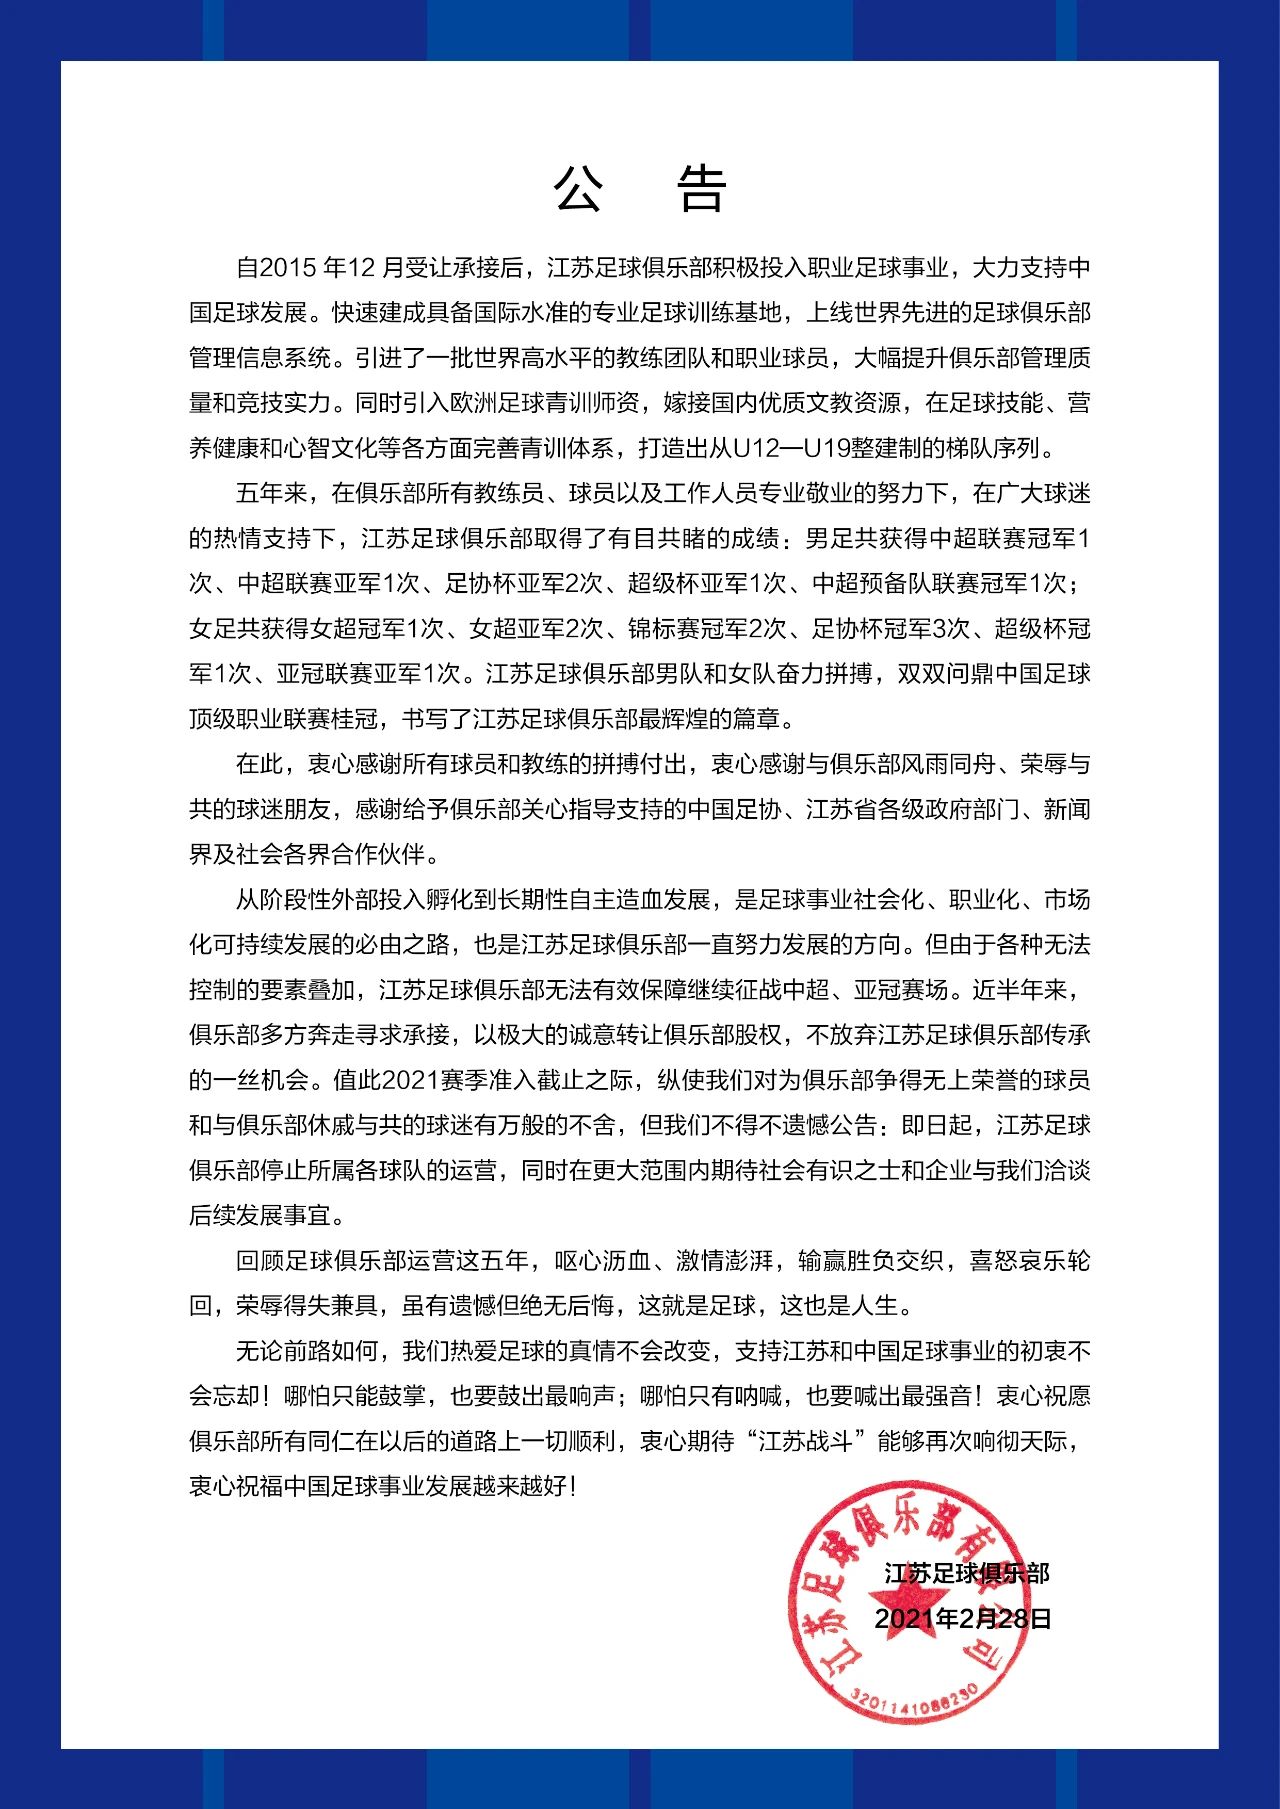 中超冠军江苏苏宁宣布停止所属各球队运营